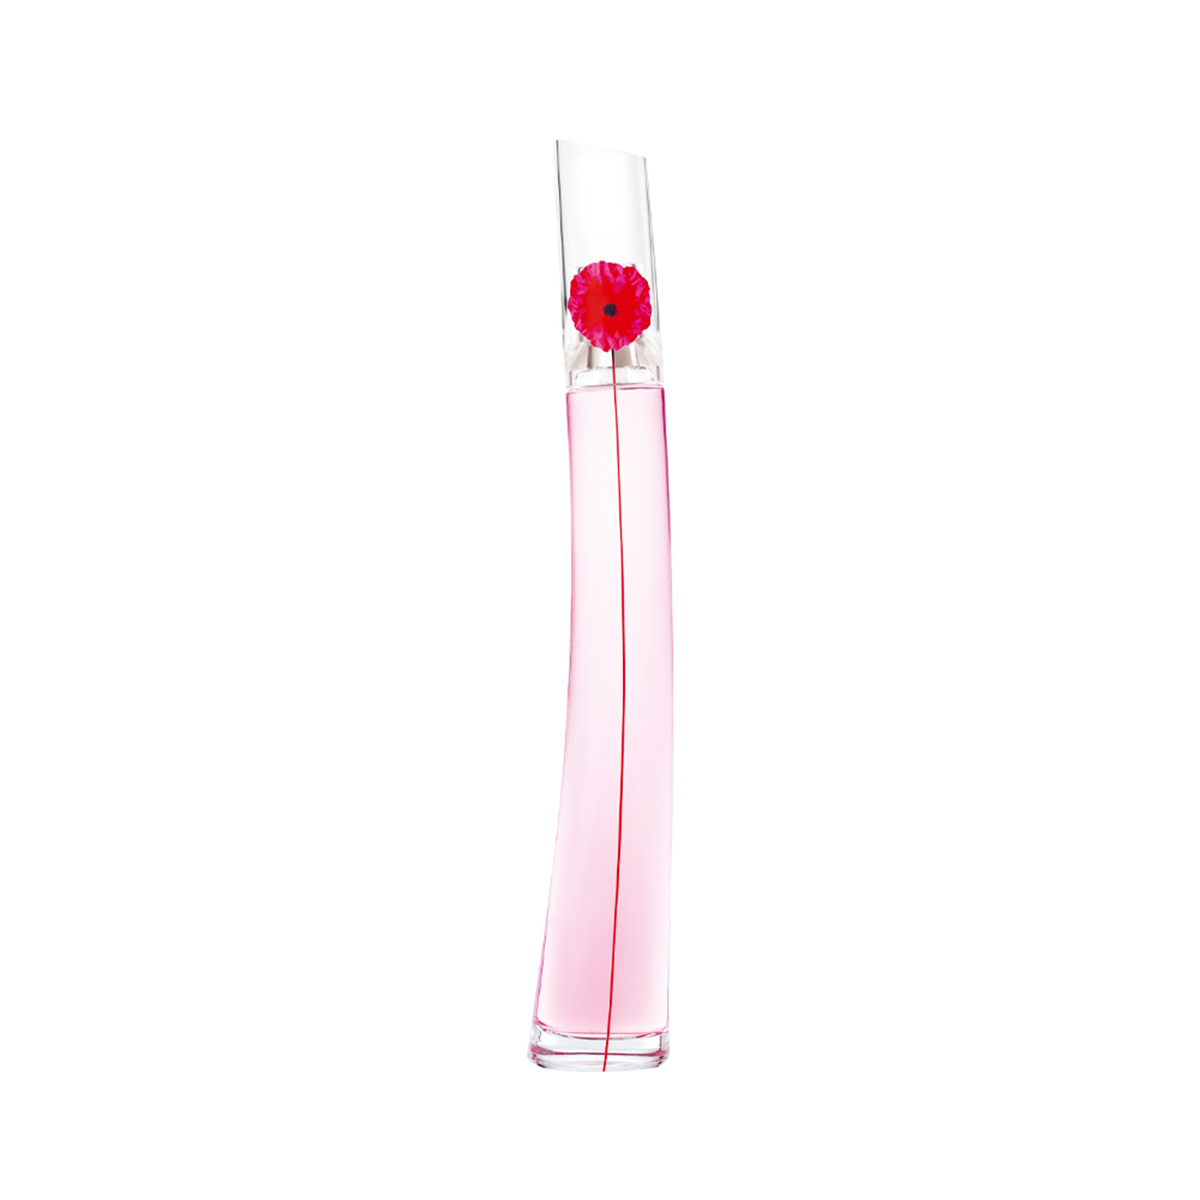 flower by kenzo 50 ml eau de parfum